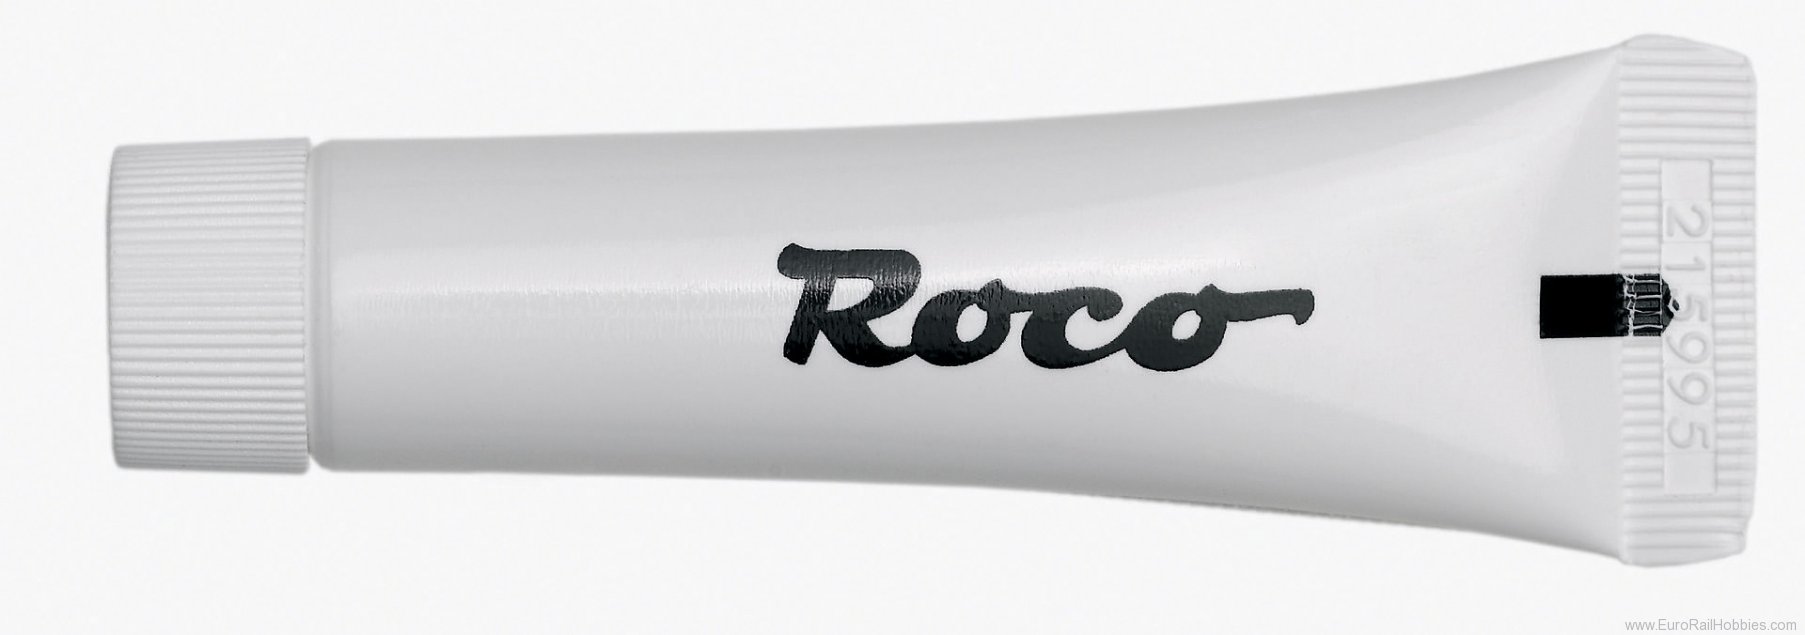 Roco 10905 Roco Special Locomotive Gear & Worm Grease